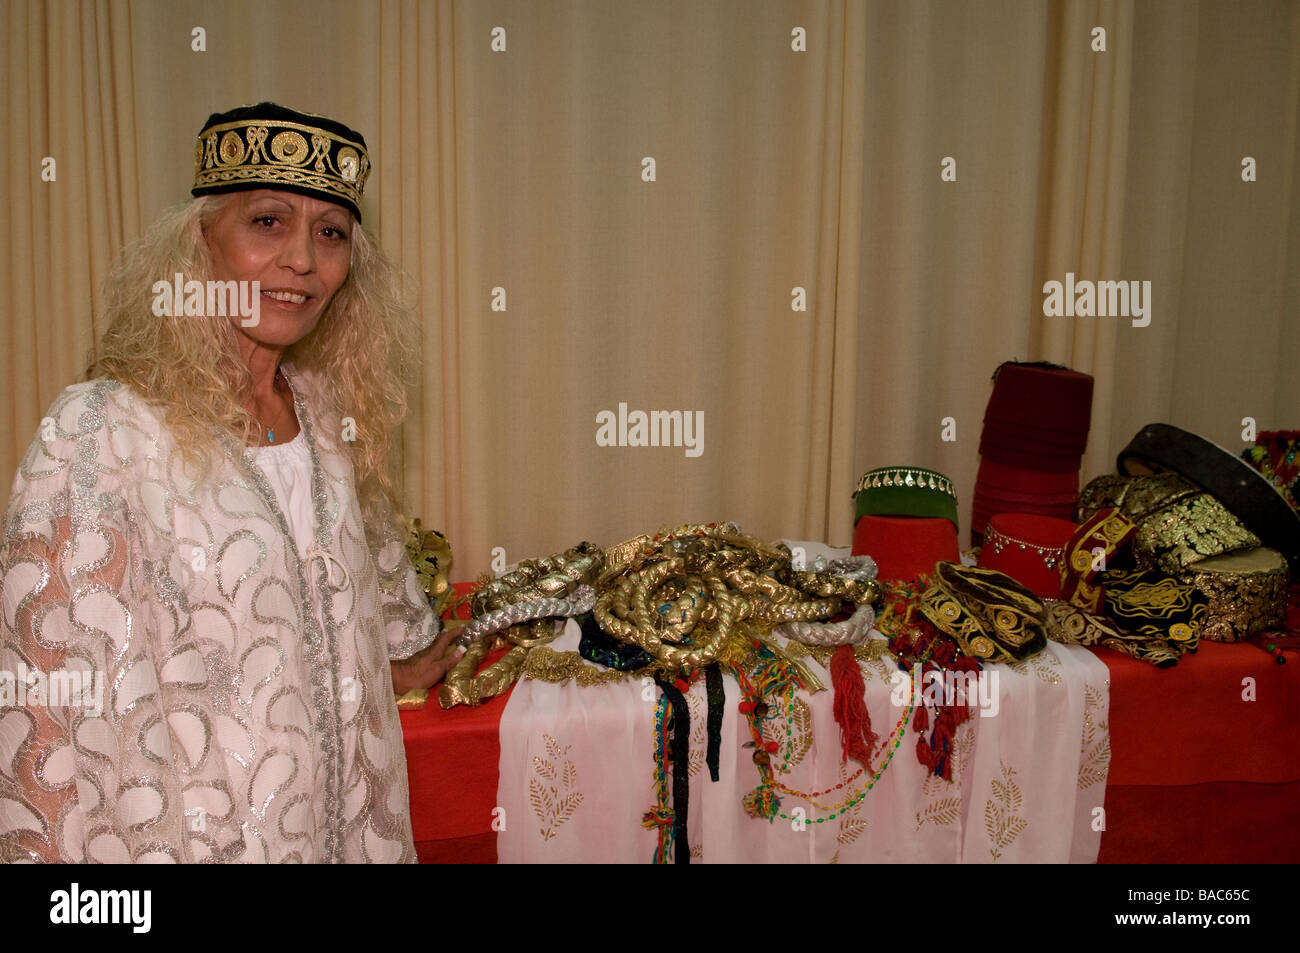 Marokkanische jüdische Frau tragen traditionelle Kleidung während des Mimunah jüdischen marokkanischen Festivals endet das Pessachfest Stockfoto